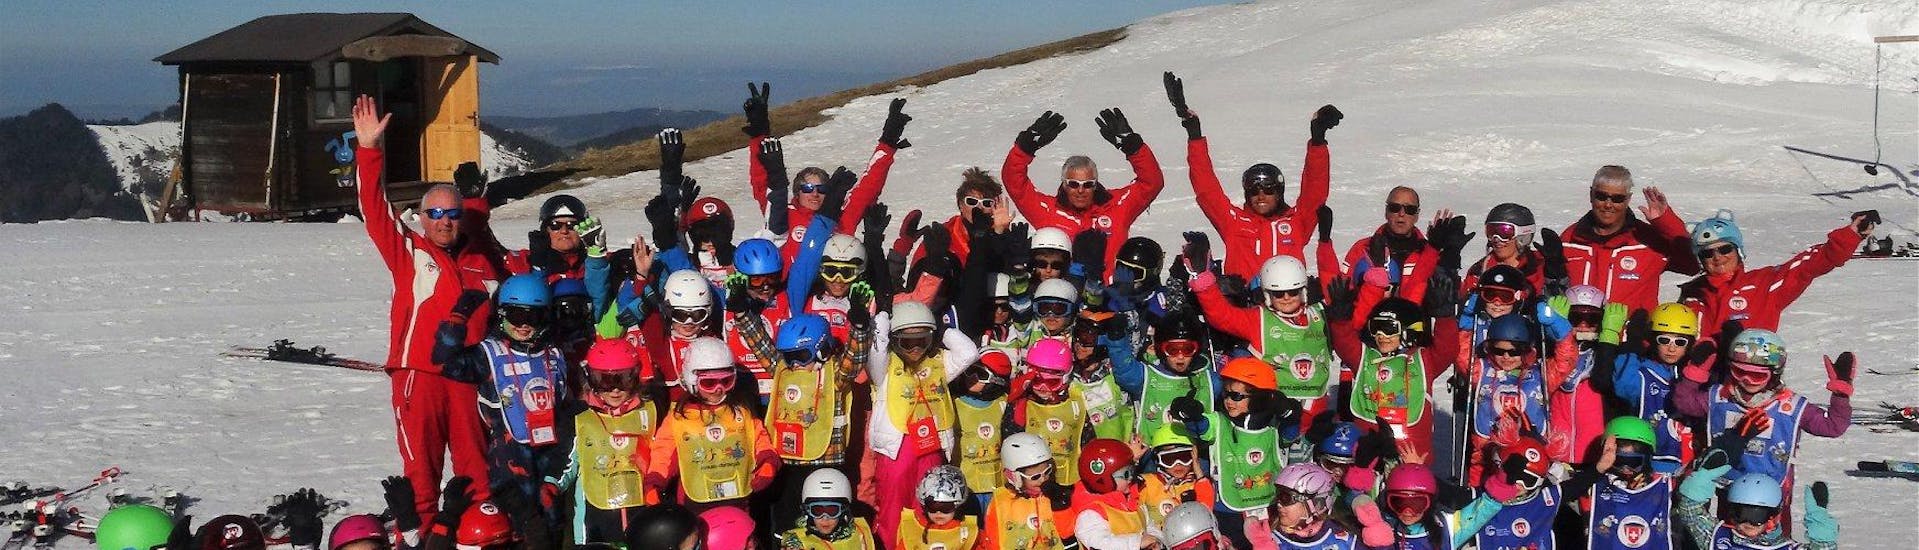 Die Schüler der Schweizer Skischule Charmey und deren Skilehrer posieren gemeinsam beim Kinder Skikurs (6-15 Jahre) - 1 Tag für ein Gruppenfoto.